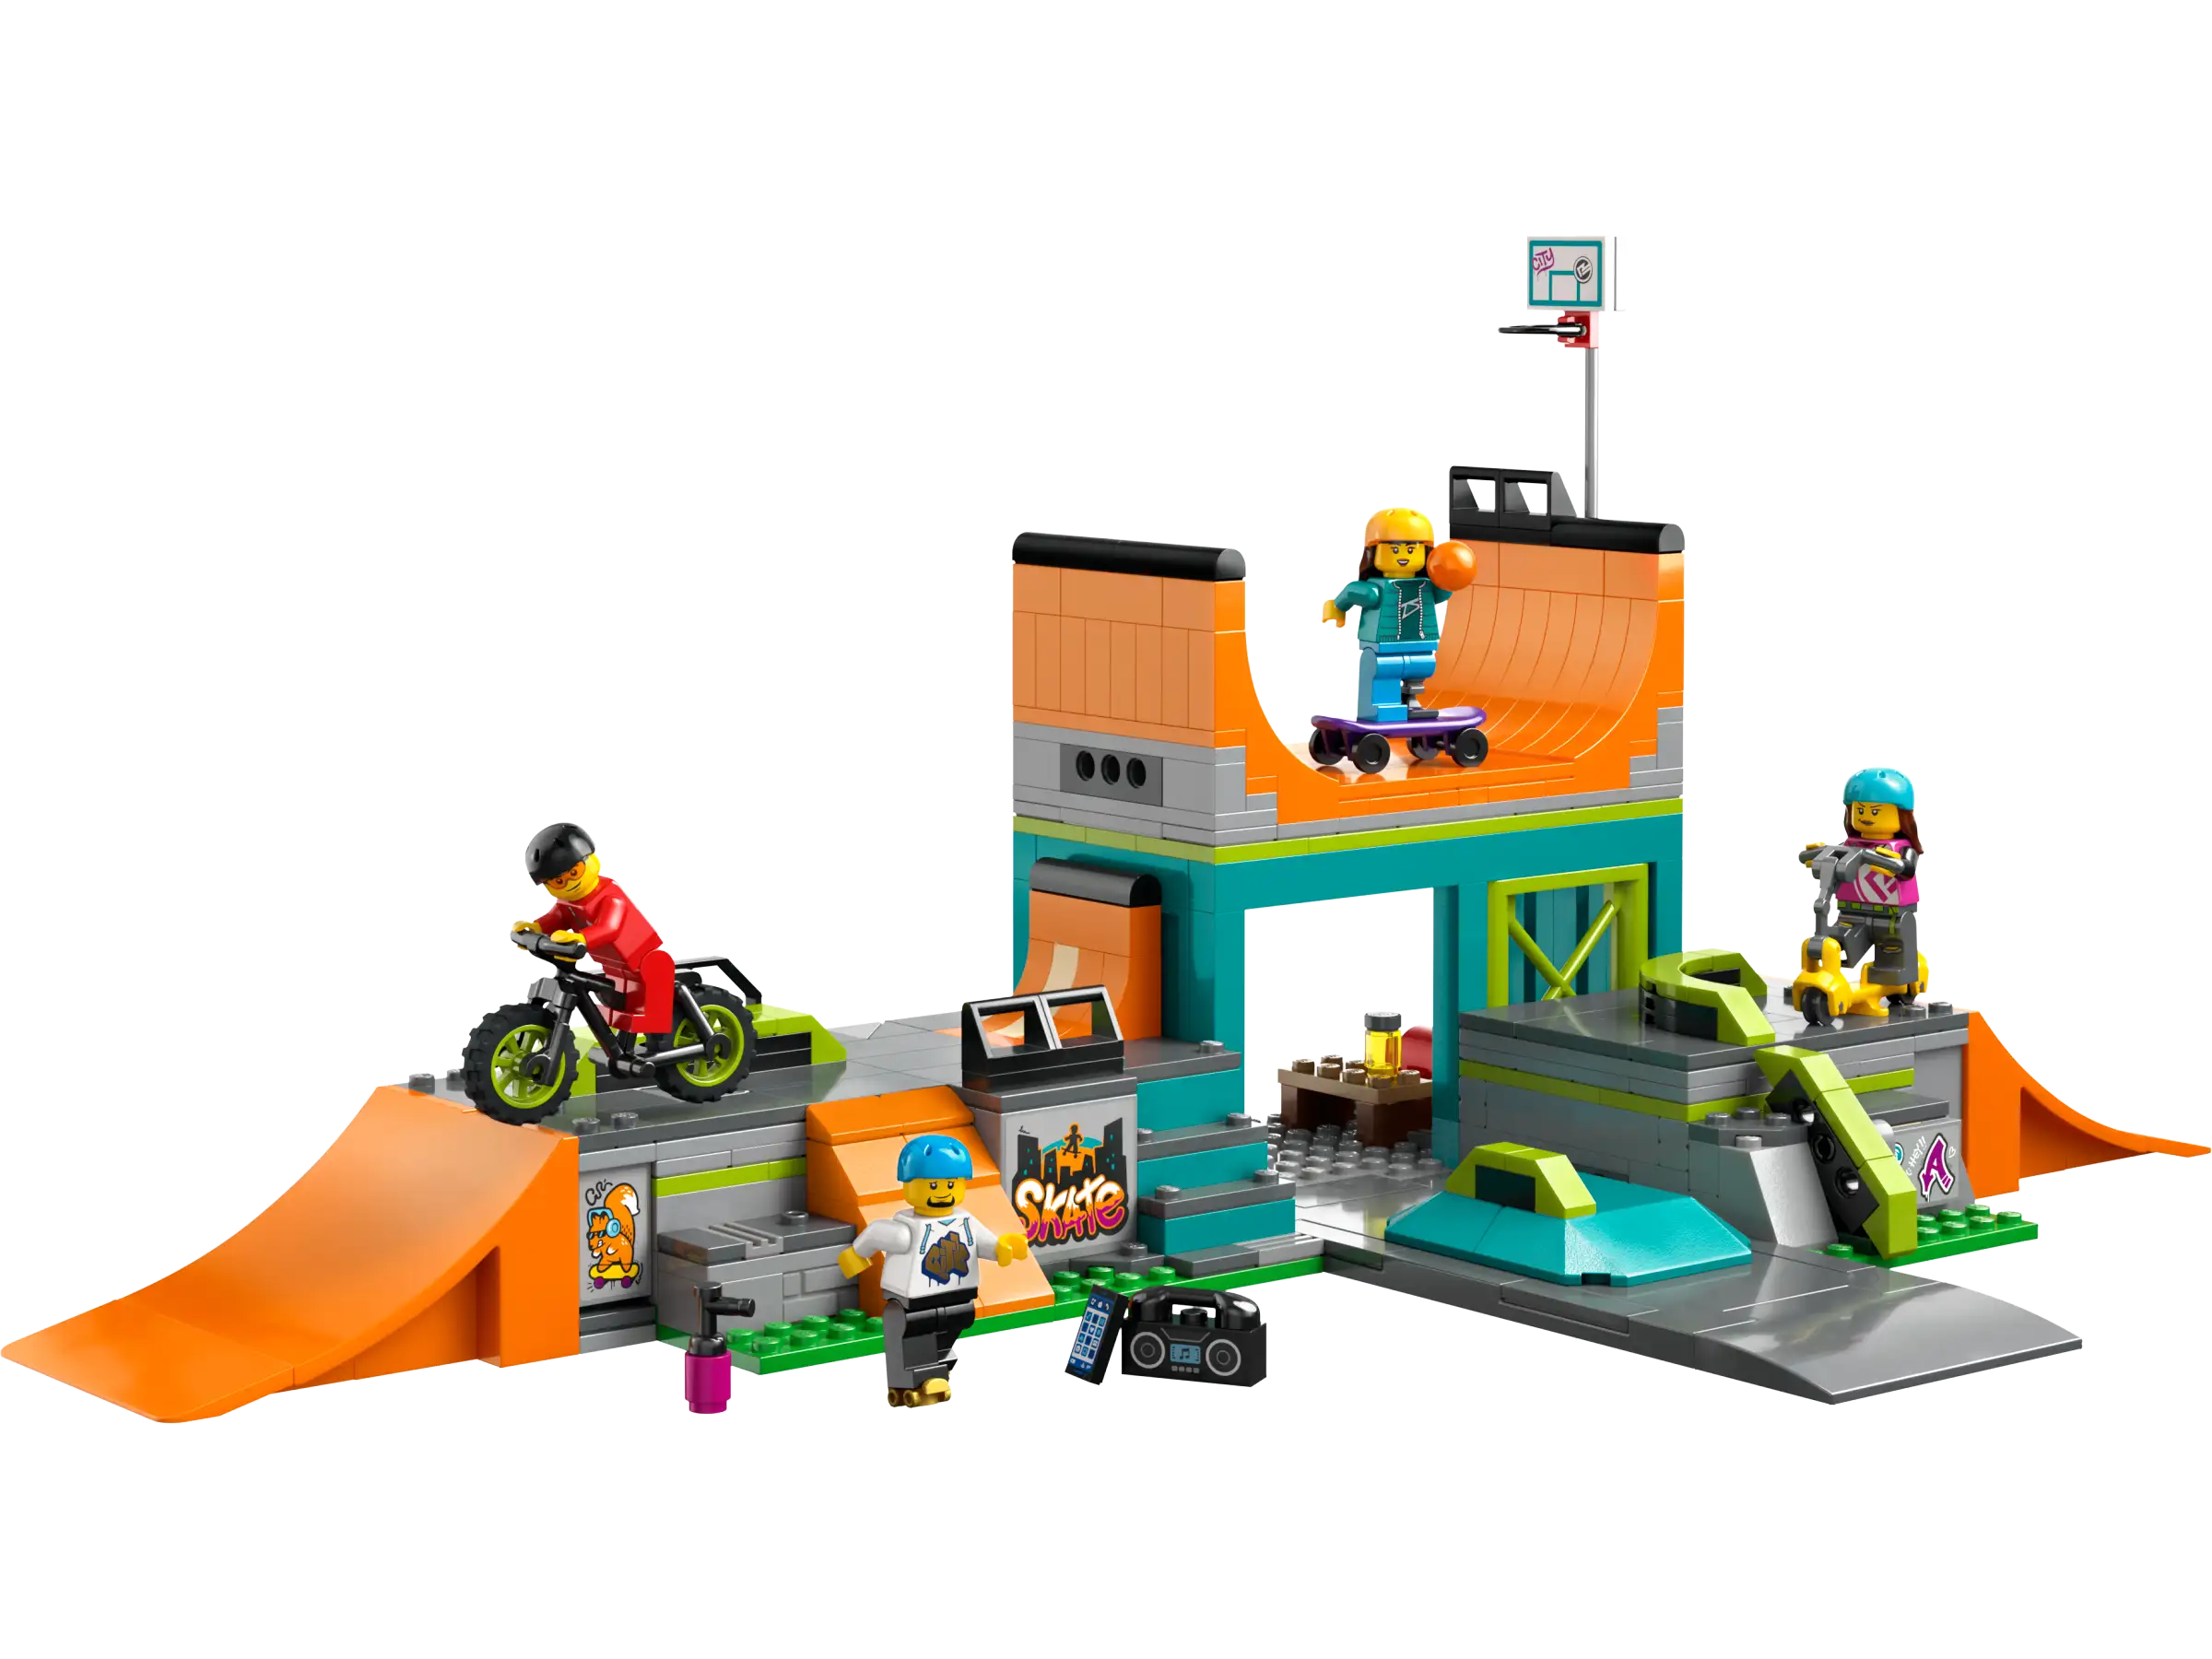 Lego - The skateboard park